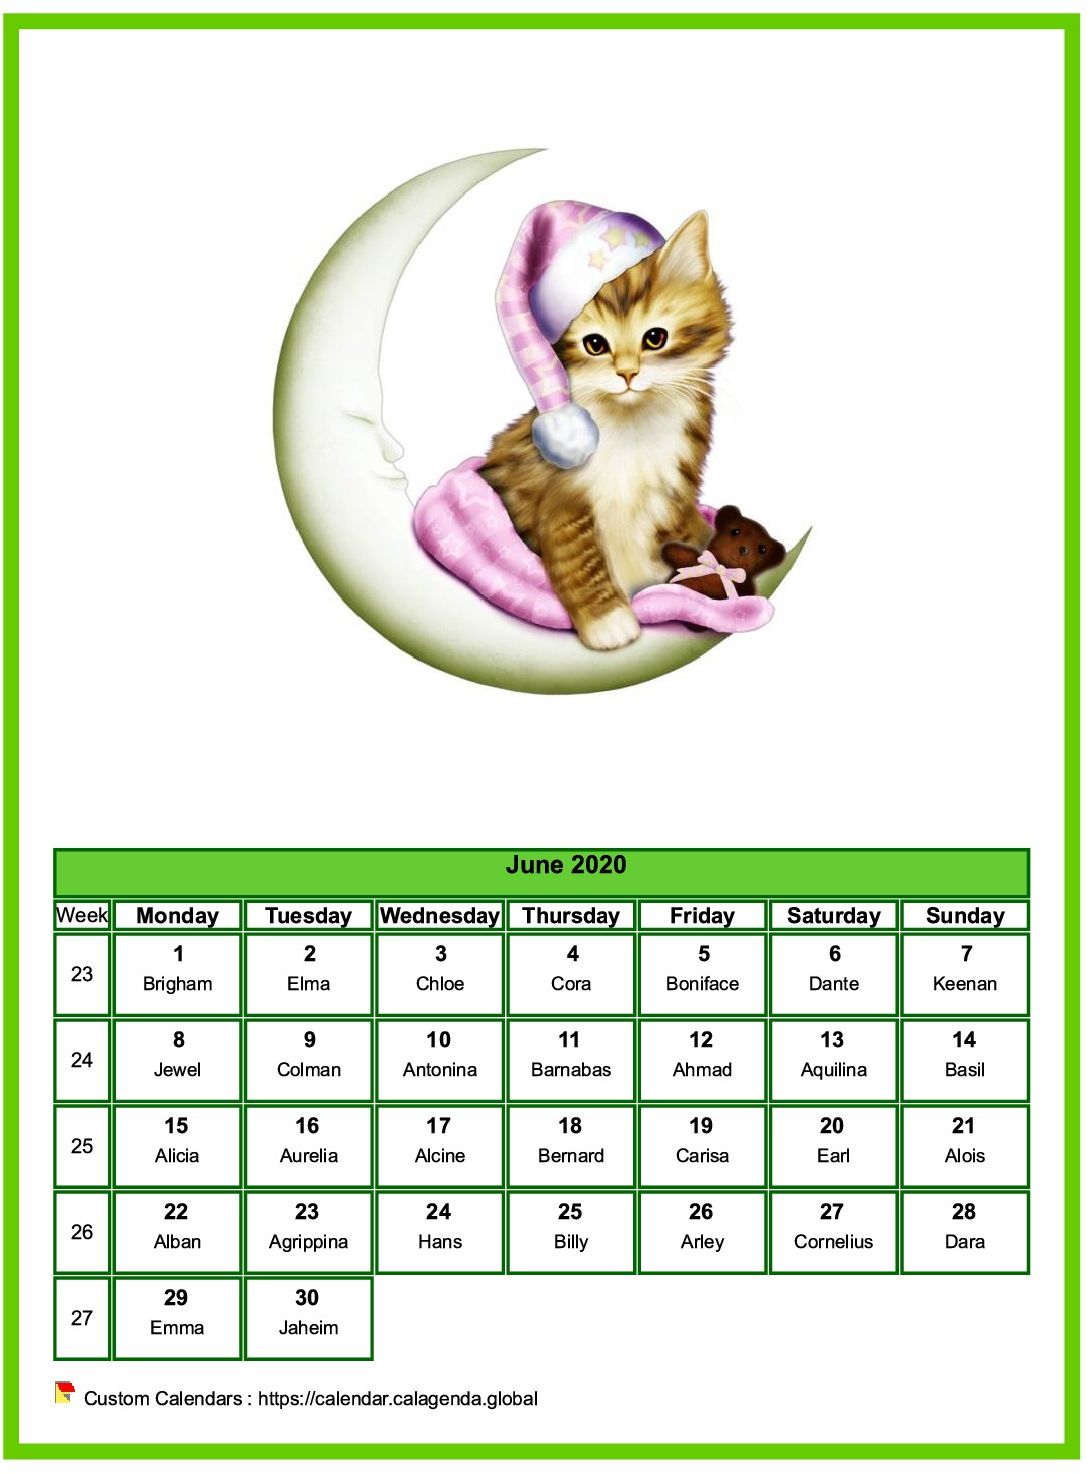 Calendar June 2020 cats